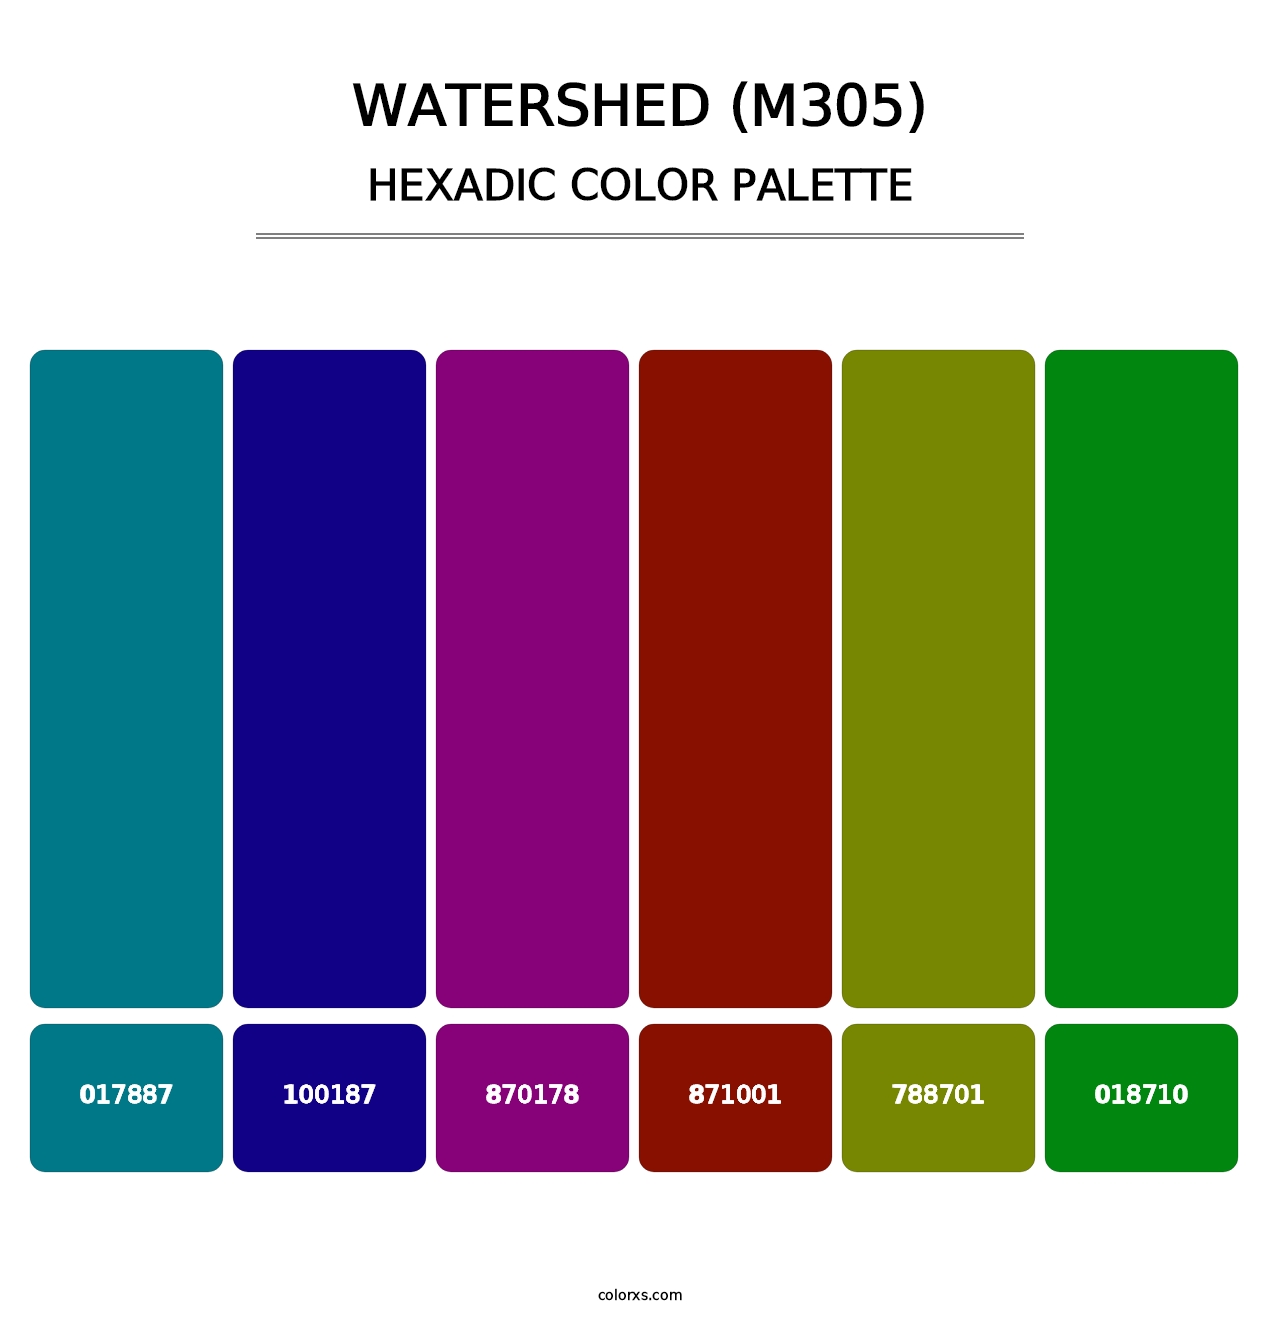 Watershed (M305) - Hexadic Color Palette